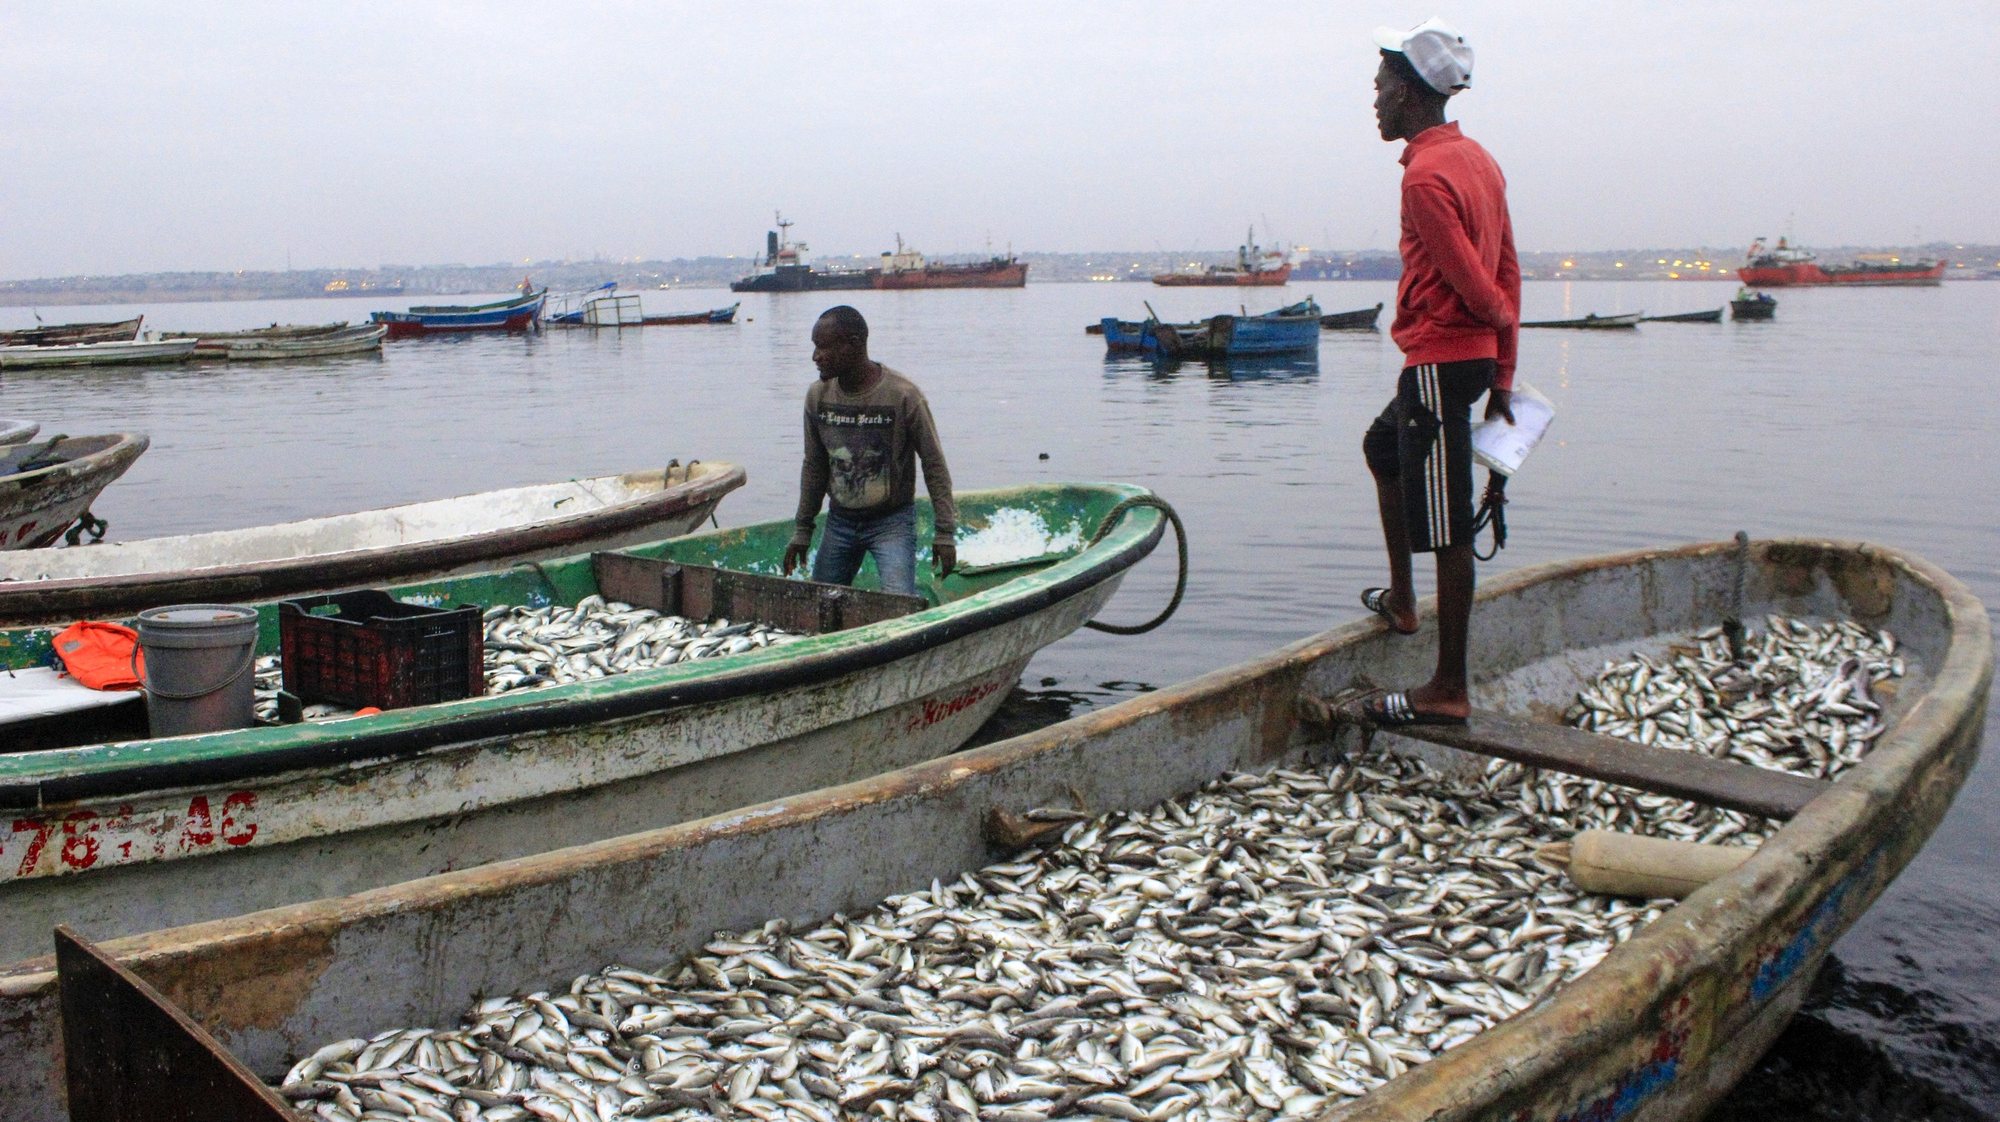 Pescadores nos seus barcos cheios de peixe, na ilha de Luanda, em Luanda, Angola, 31 de maio de 2022. Além da redução do pescado, sobretudo nos últimos meses, os pescadores da ilha de Luanda confrontam-se com novas ameaças ao seu modo de vida, enfrentando assaltos em alto mar, protagonizados por homens armados. (ACOMPANHA TEXTO DA LUSA DO DIA 18 DE JUNHO DE 2022). AMPE ROGÉRIO/LUSA